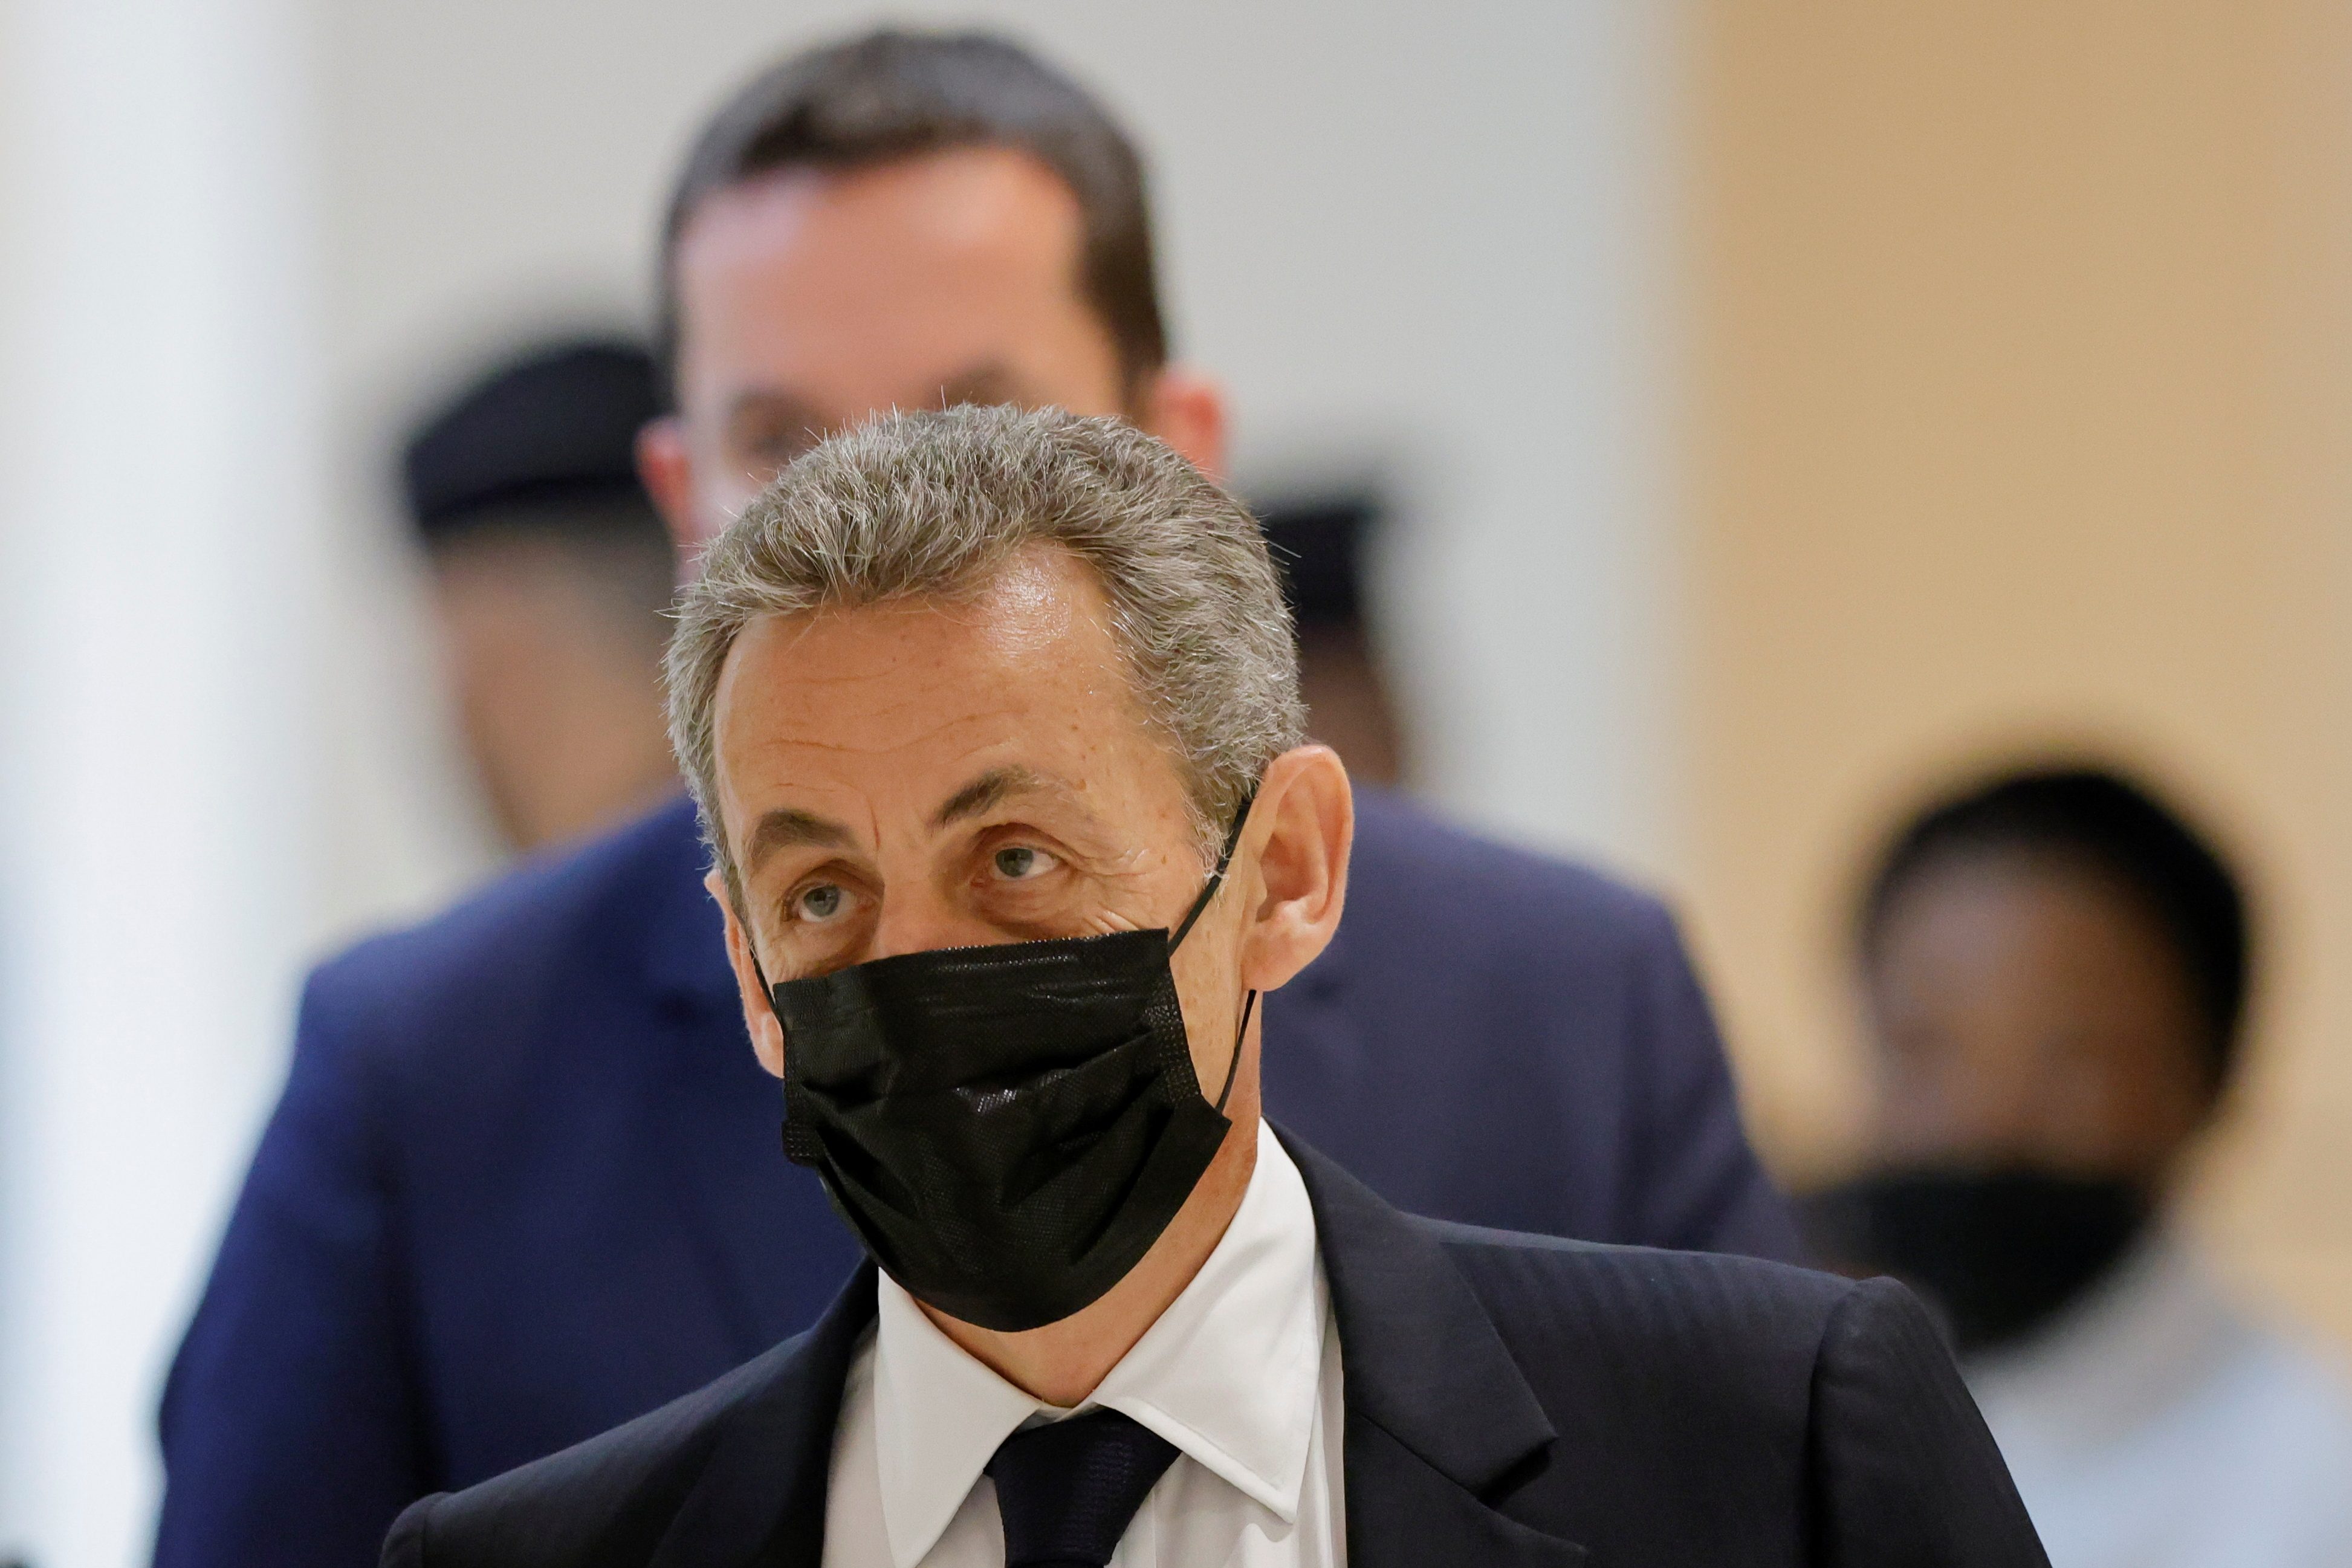 France’s Sarkozy likely to avoid jail despite new conviction